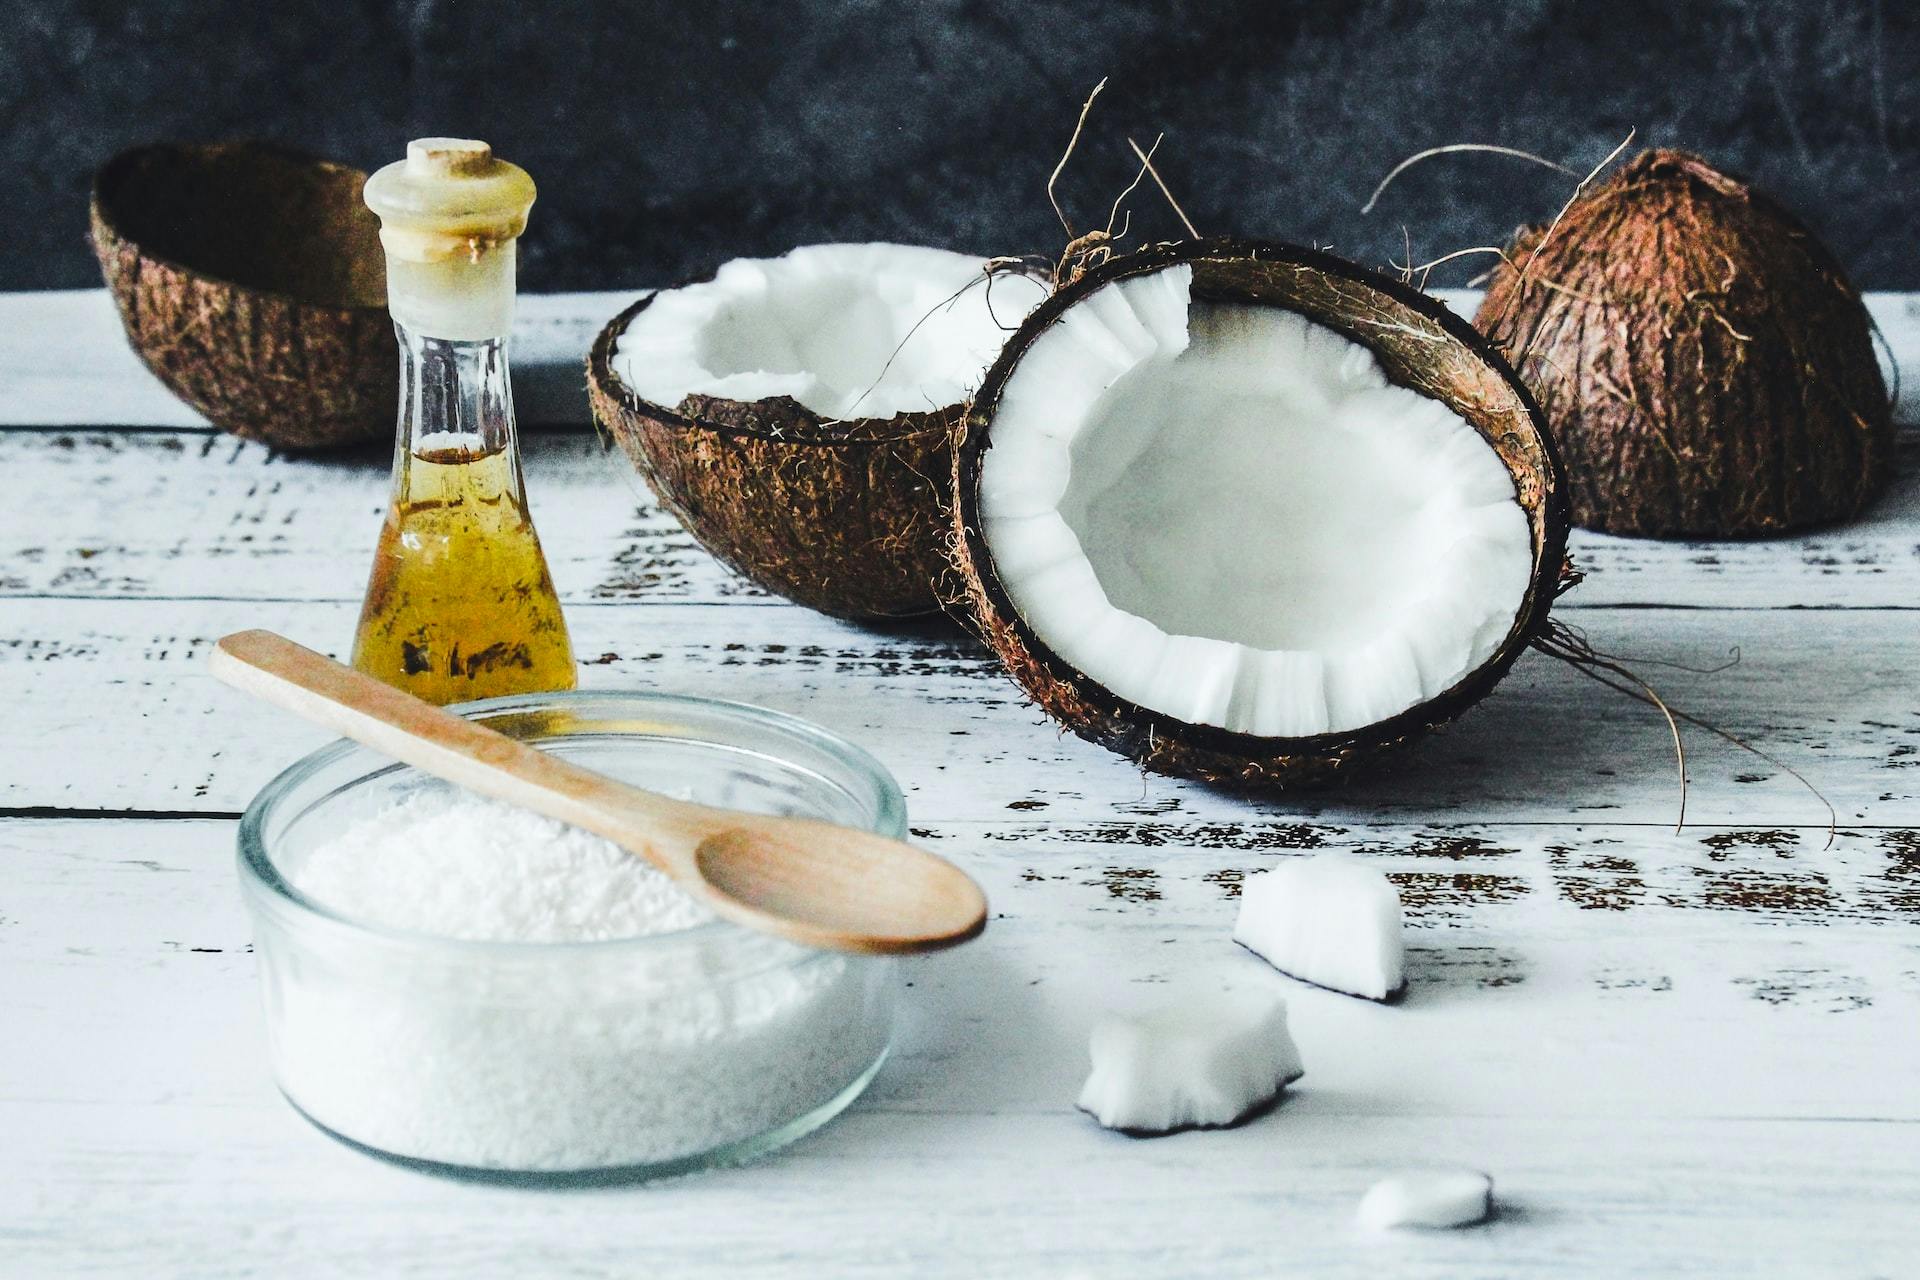 L'huile de coco : ses vertus – ses usages